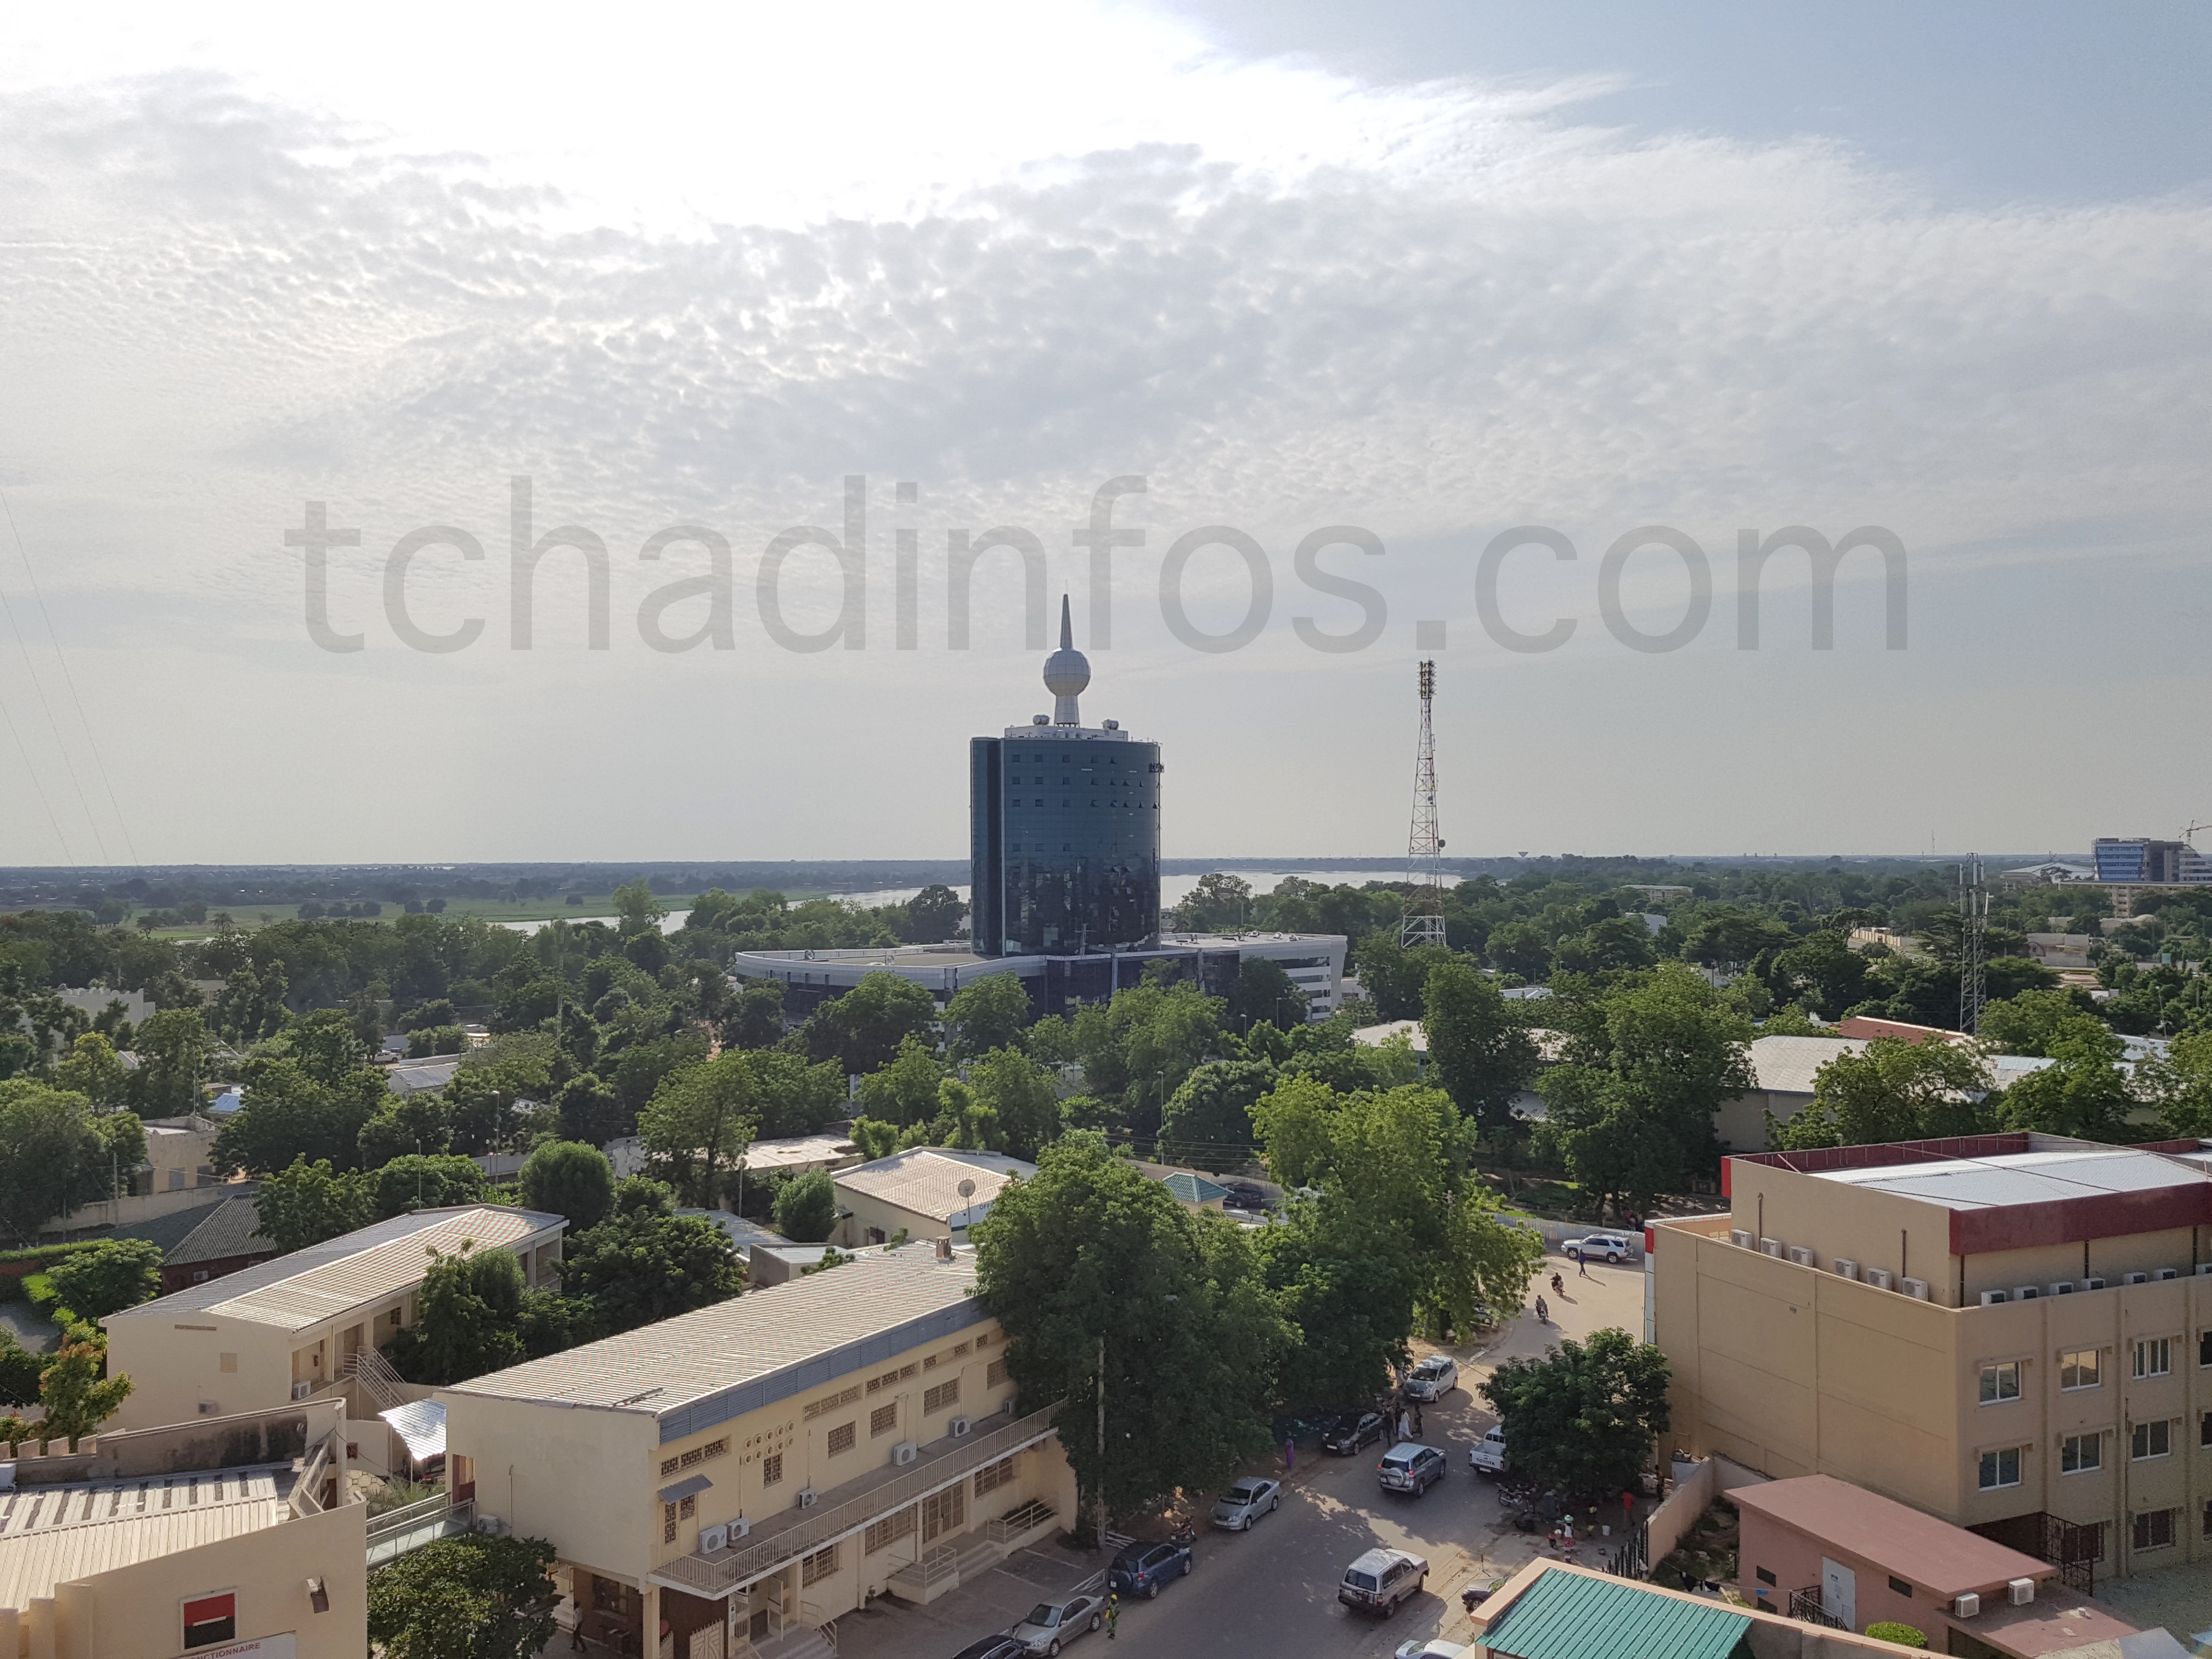 L’image du parc immobilier de l’Etat tchadien mérite d’être soignée